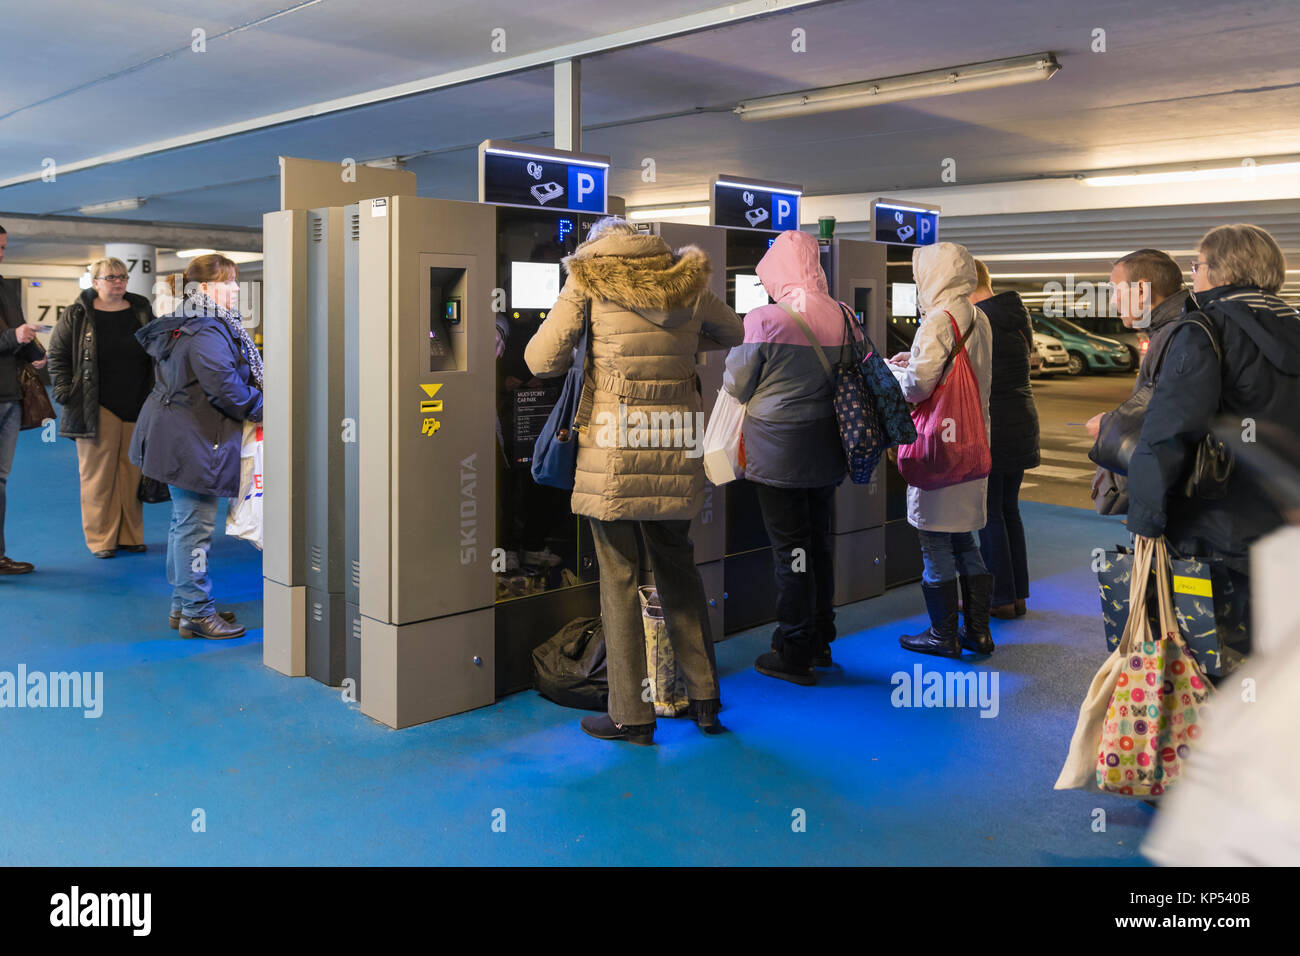 Les gens de la file d'attente dans un parking à étages au Royaume-Uni en attente d'acheter un ticket de parking ticket machines. Banque D'Images